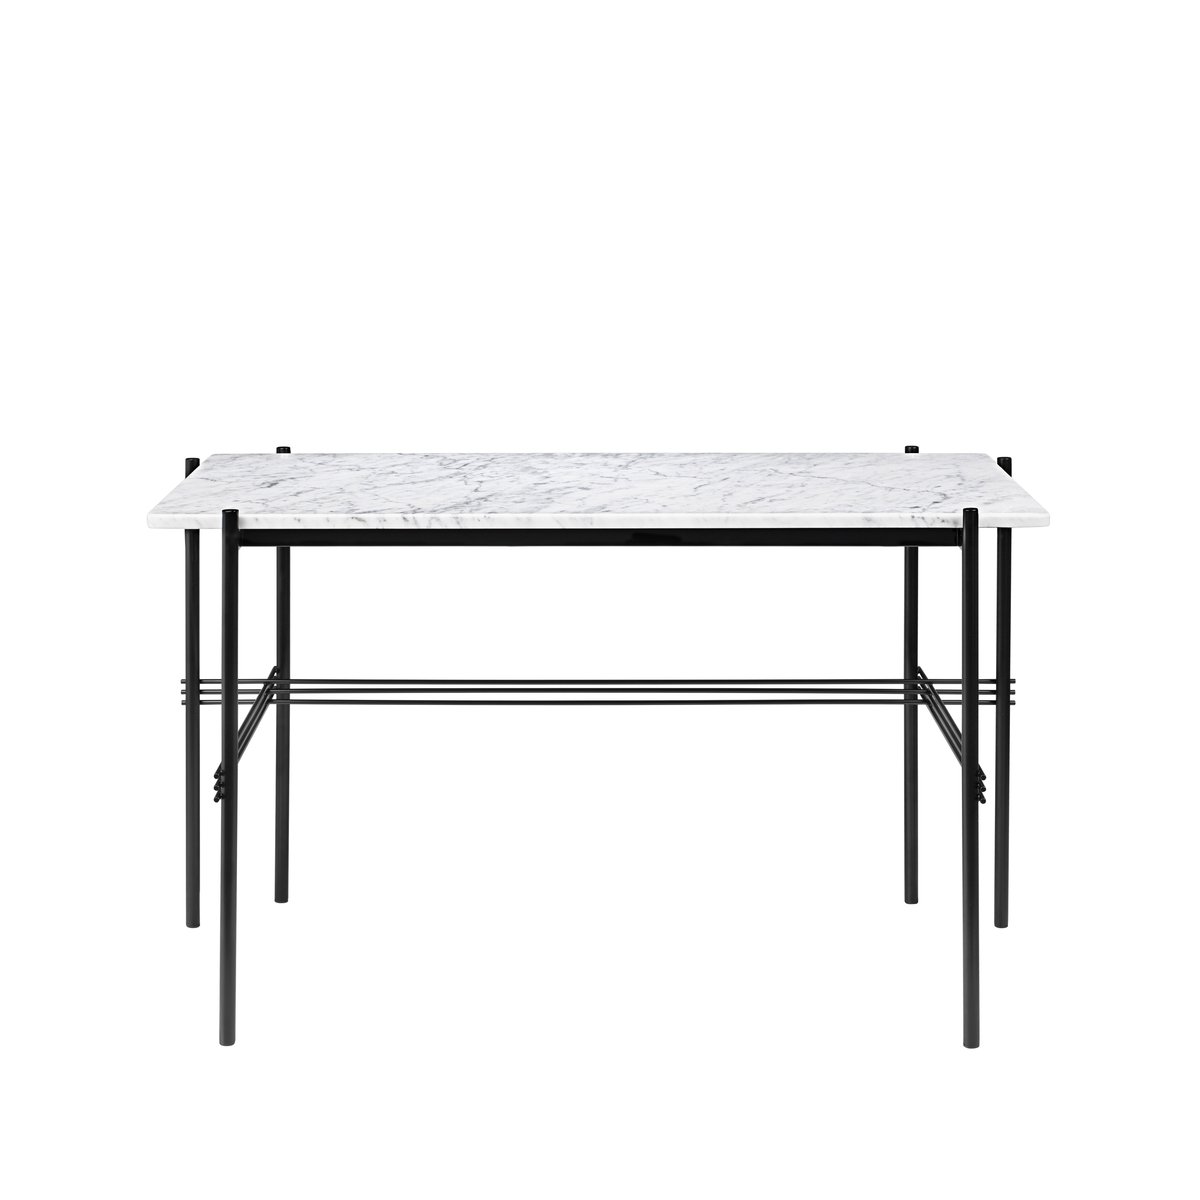 GUBI TS Desk bureau marble white, zwartgelakt staal